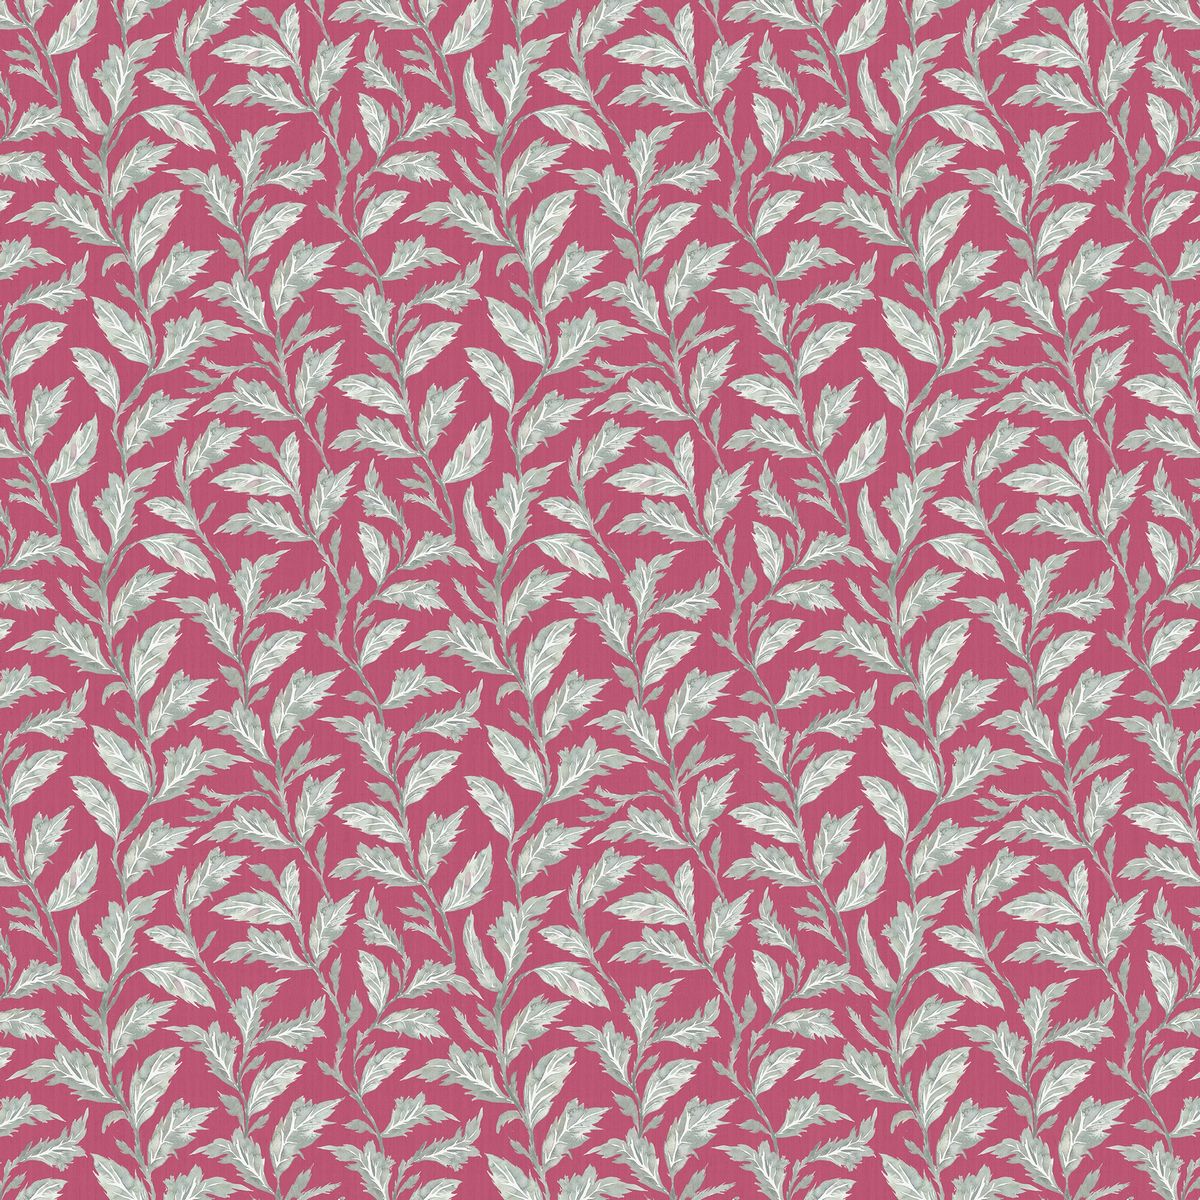 Eildon Fuchsia Fabric by Voyage Maison